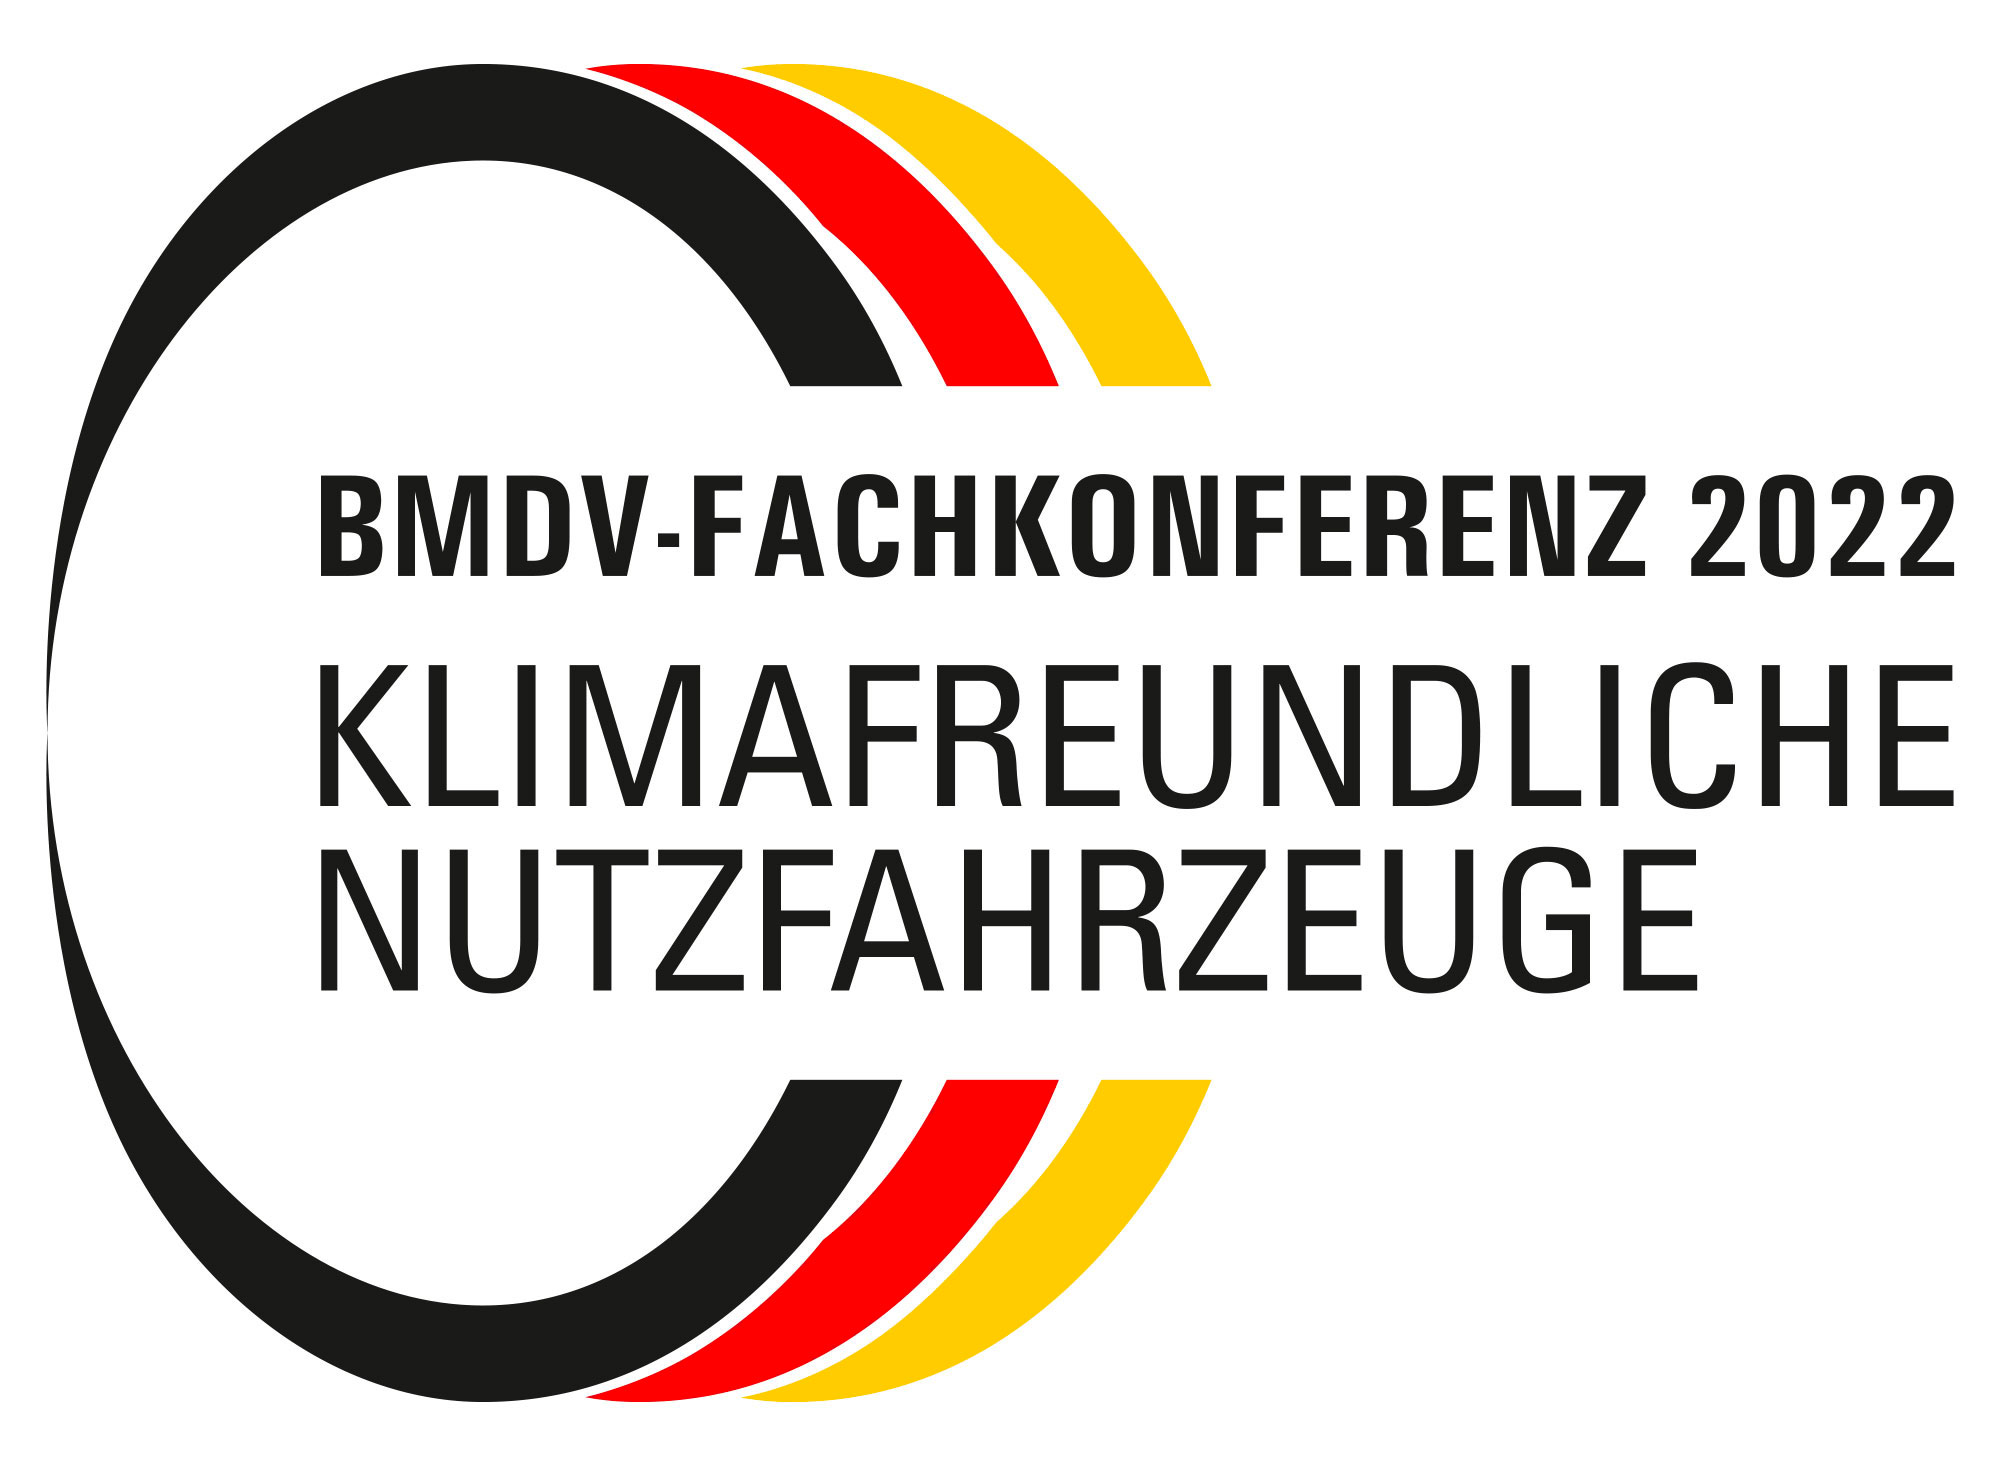 BMDV-Fachkonferenz klimafreundliche Nutzfahrzeuge